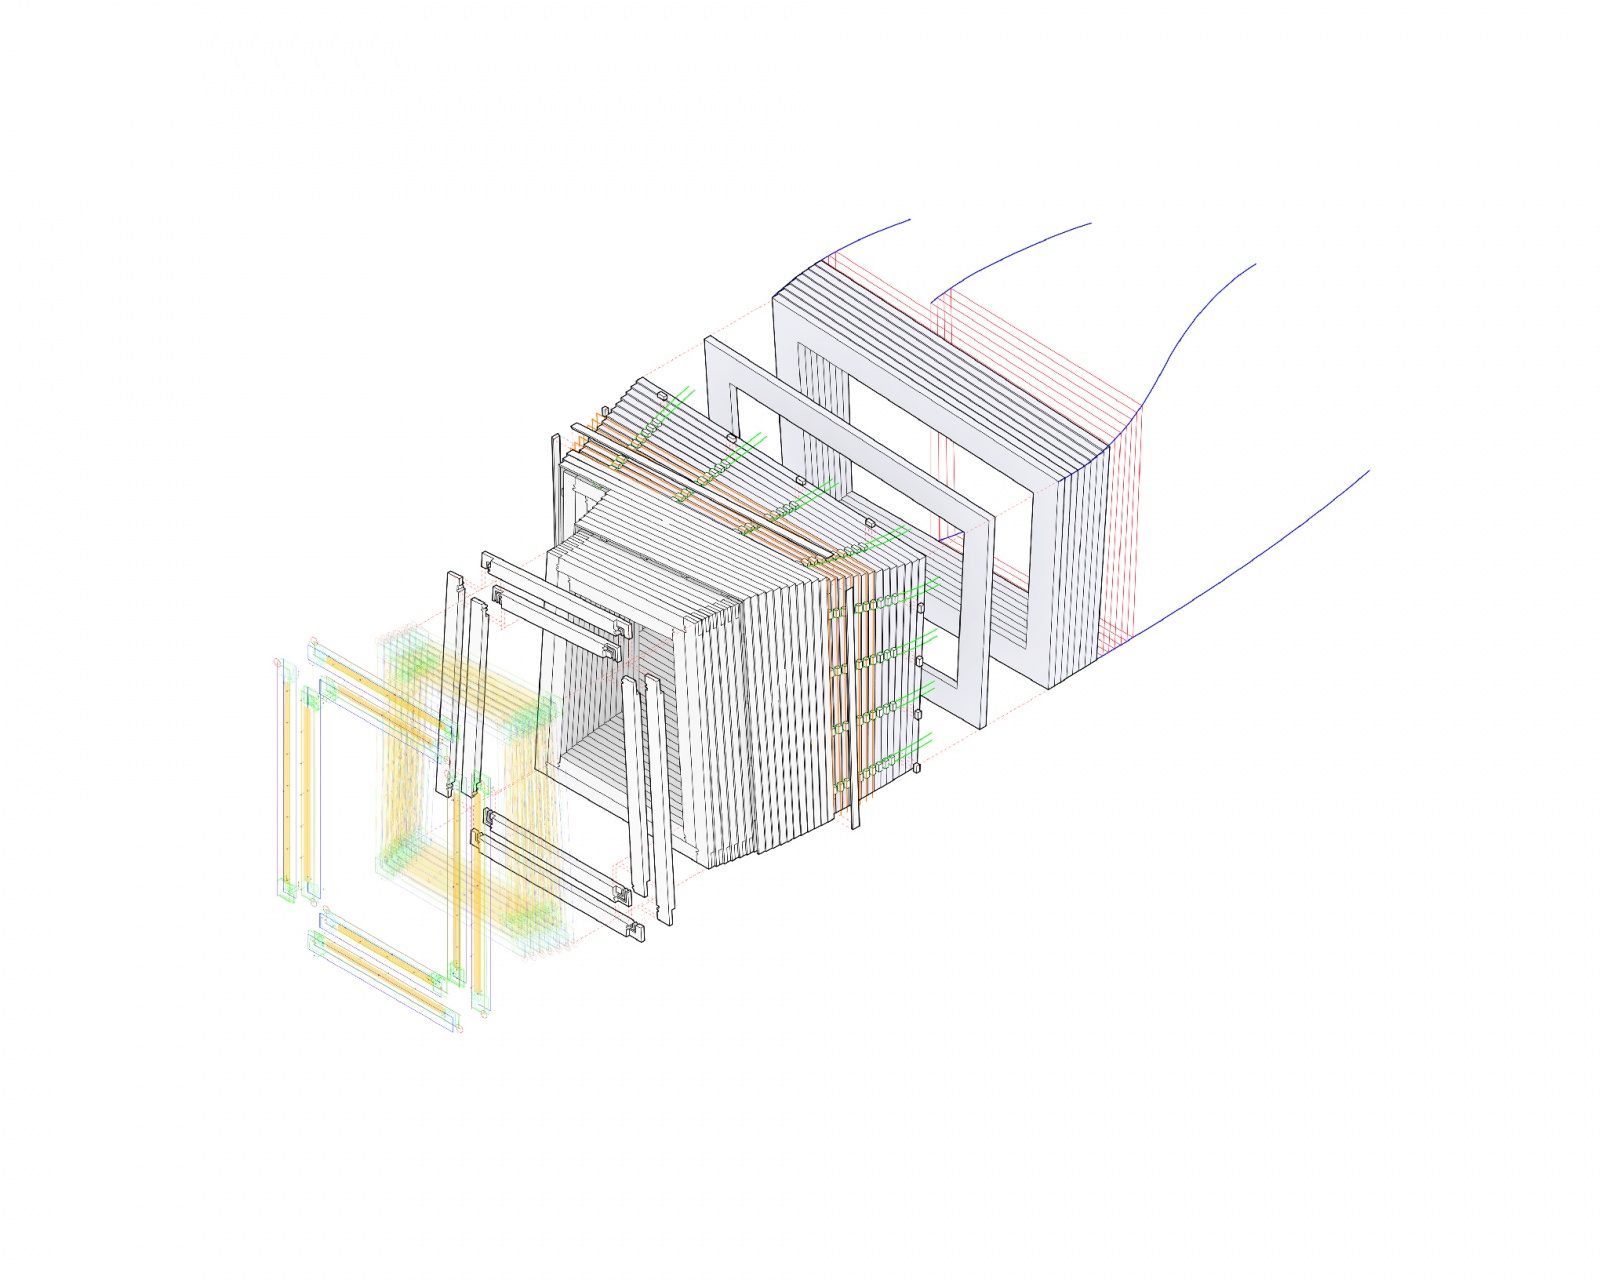 Timber Prototype House, Explosionszeichnung des Entwurfs, Bild: Oliver Bucklin, ICD